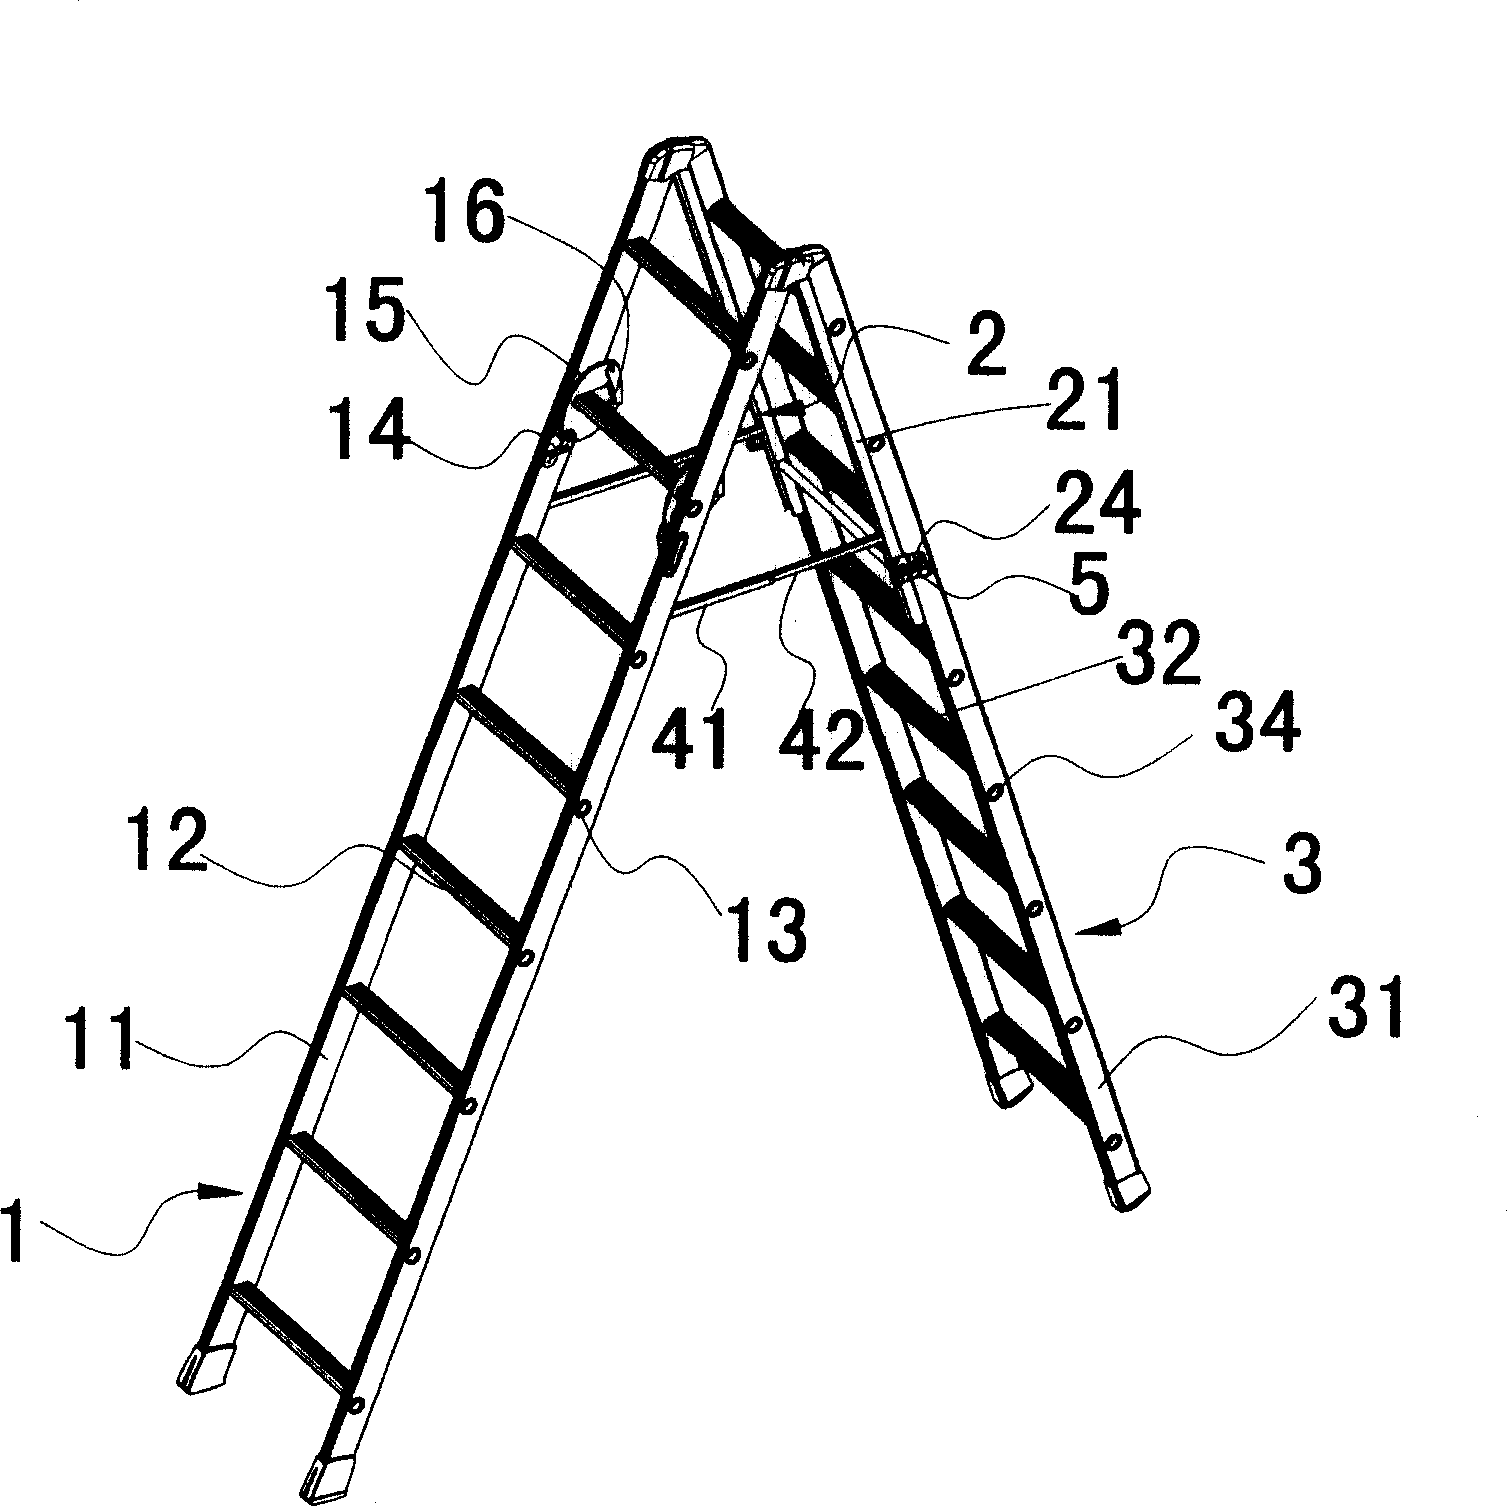 Liftable v-ladder